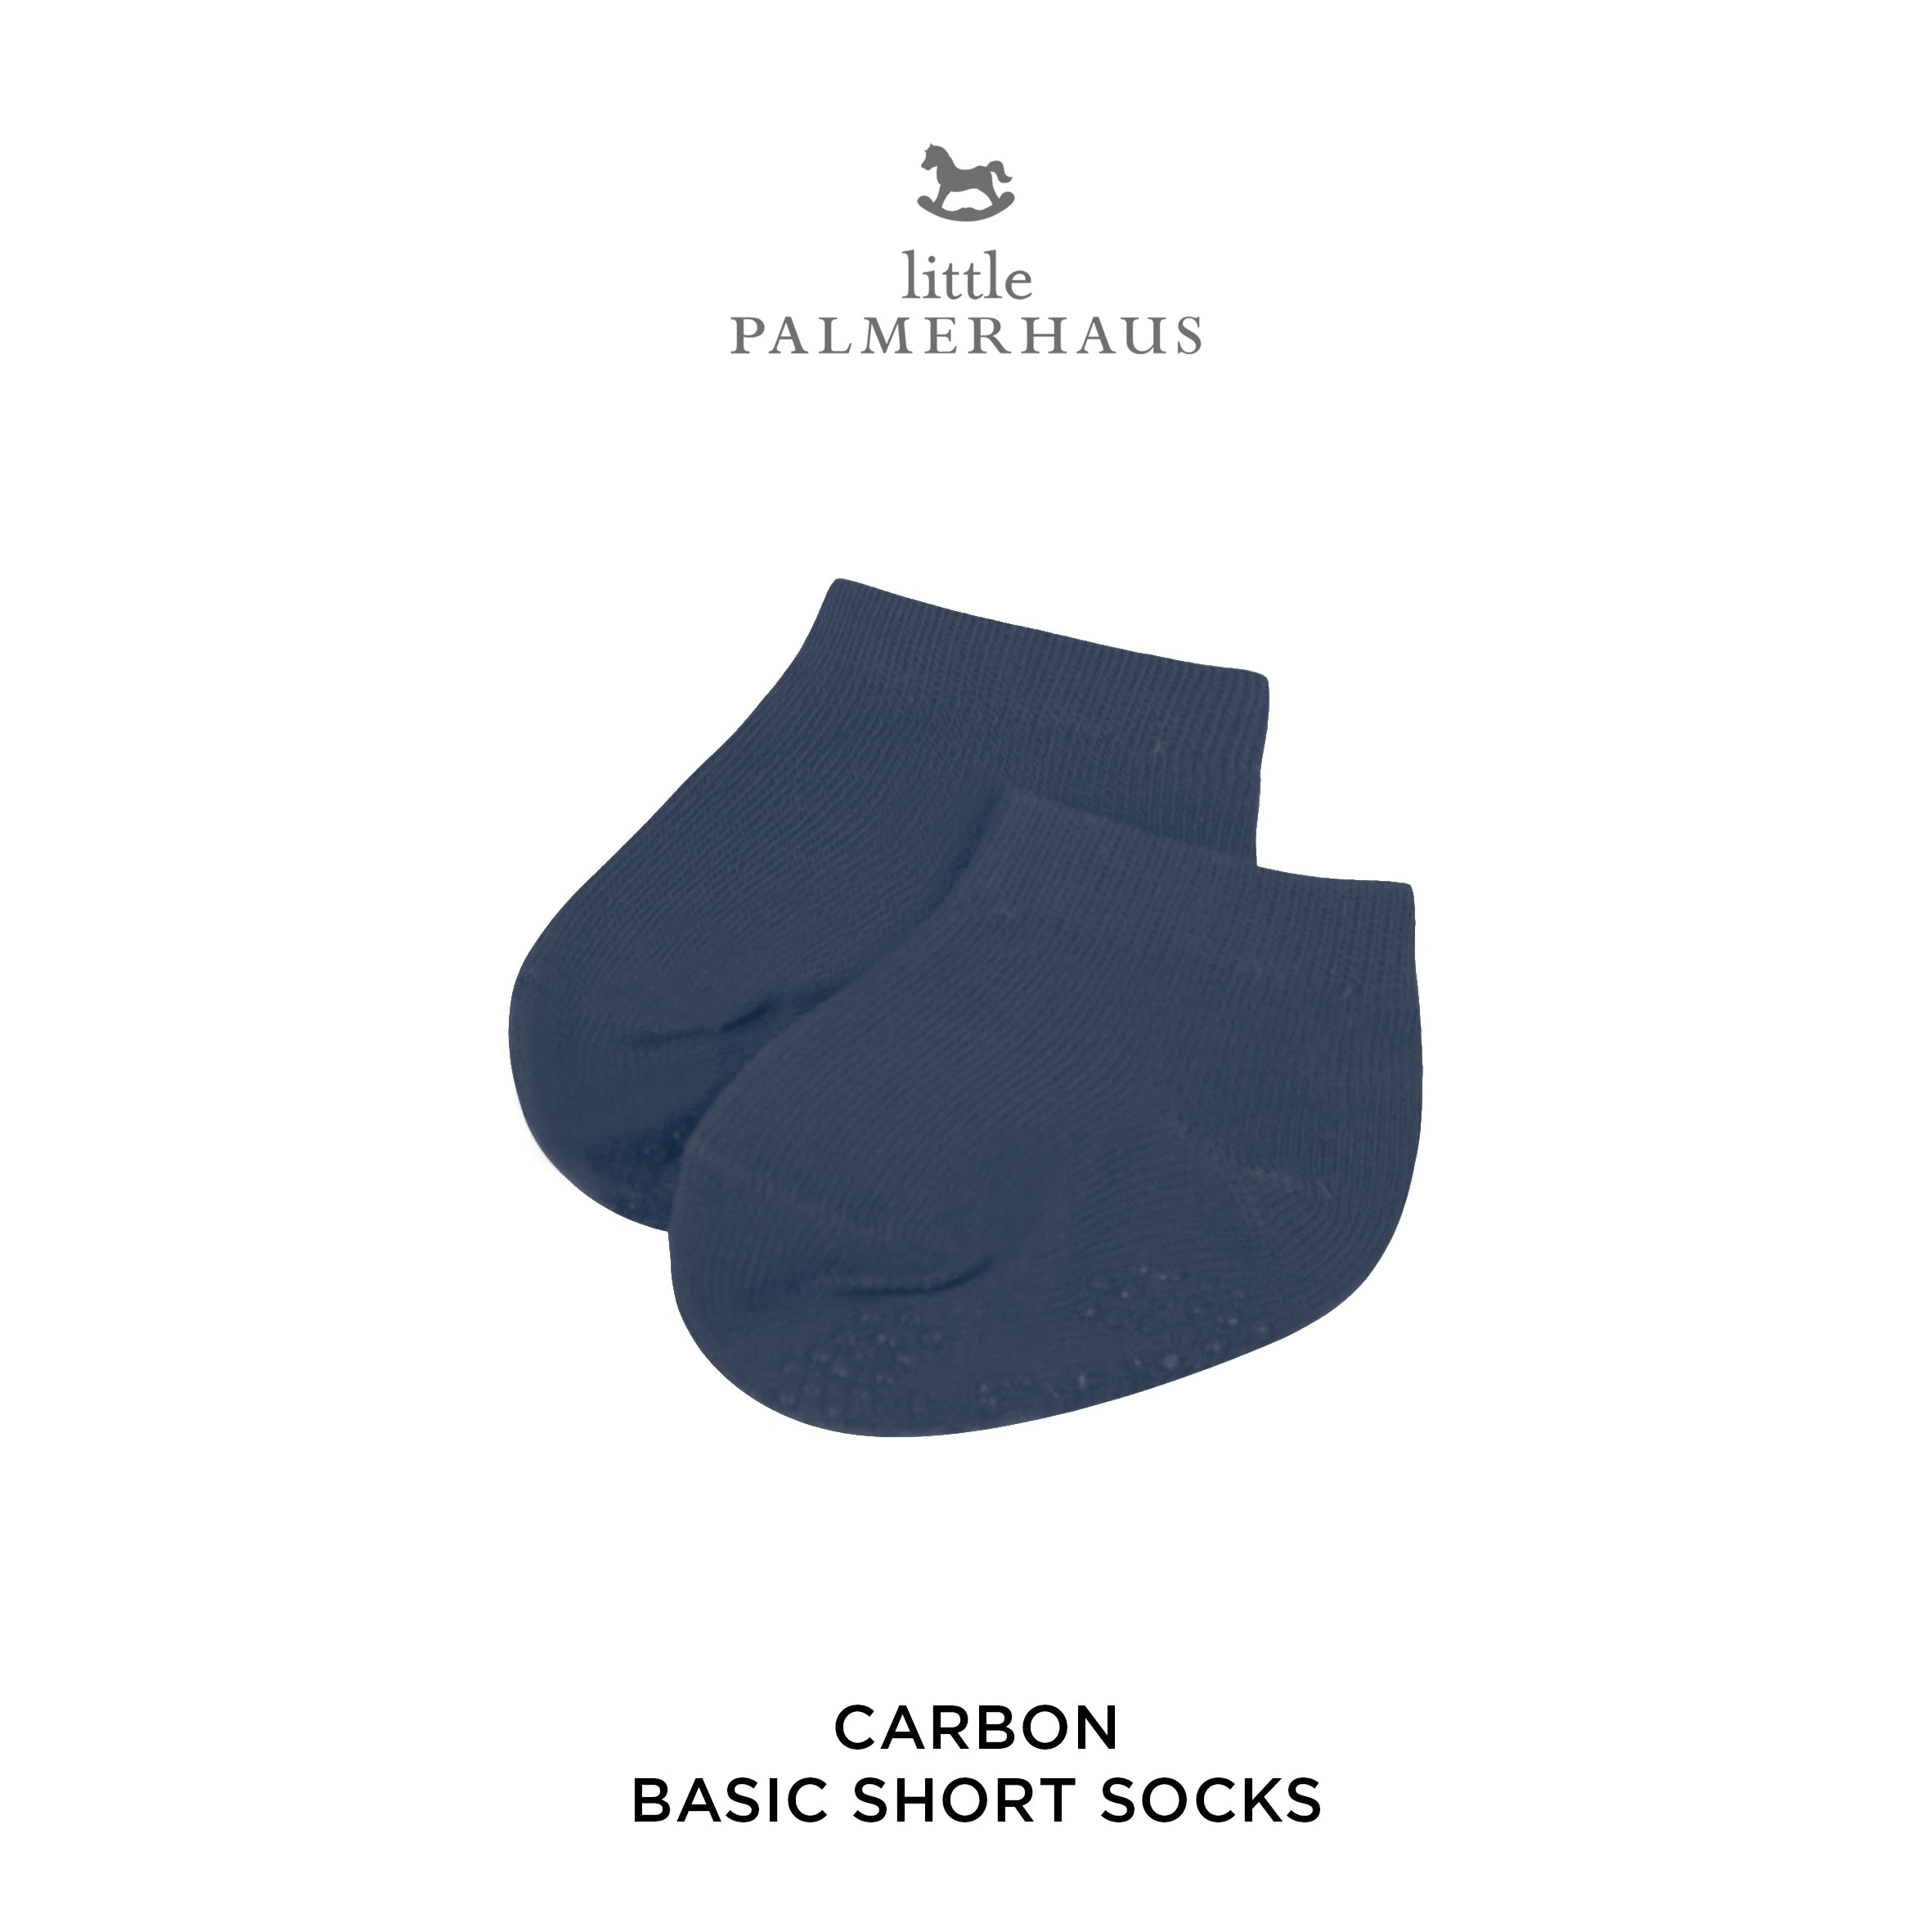 Basic Short Socks With Antislip 3.0